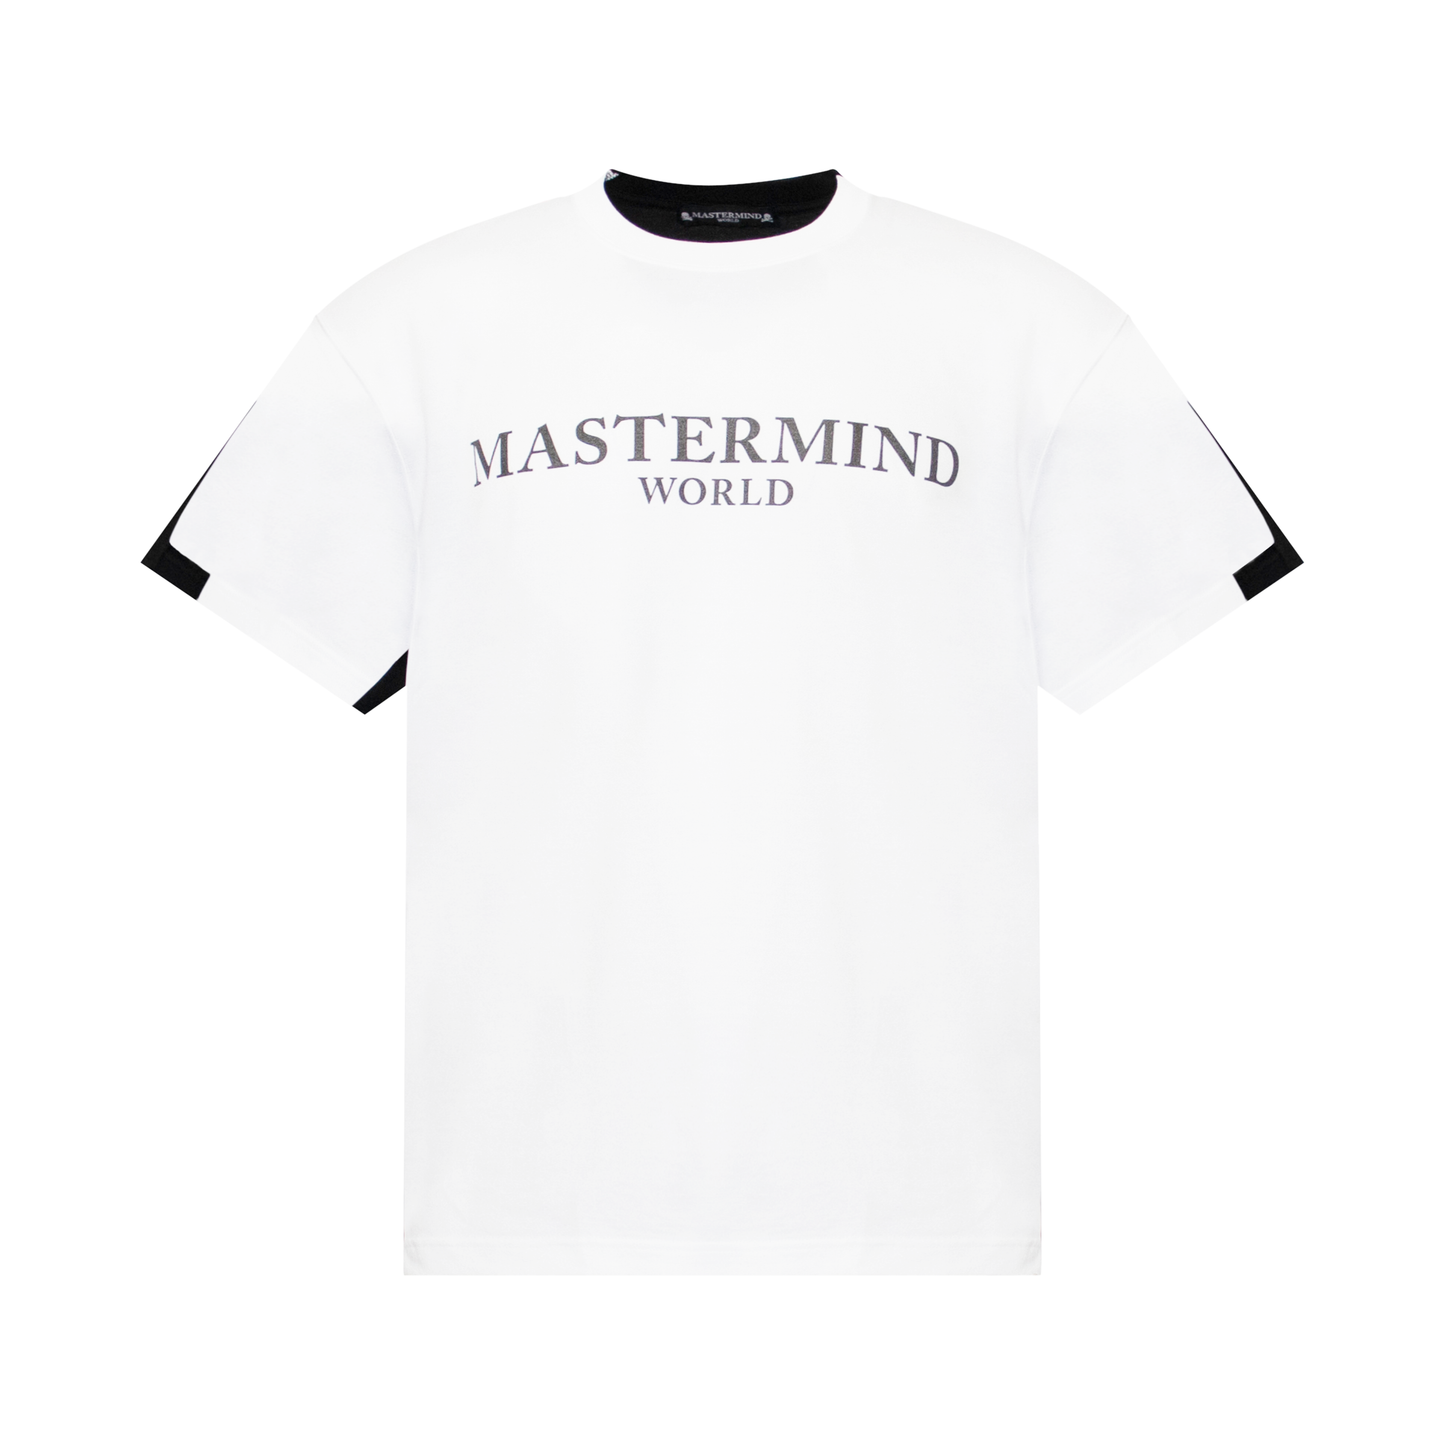 Mastermind World T-Shirt in White/Black